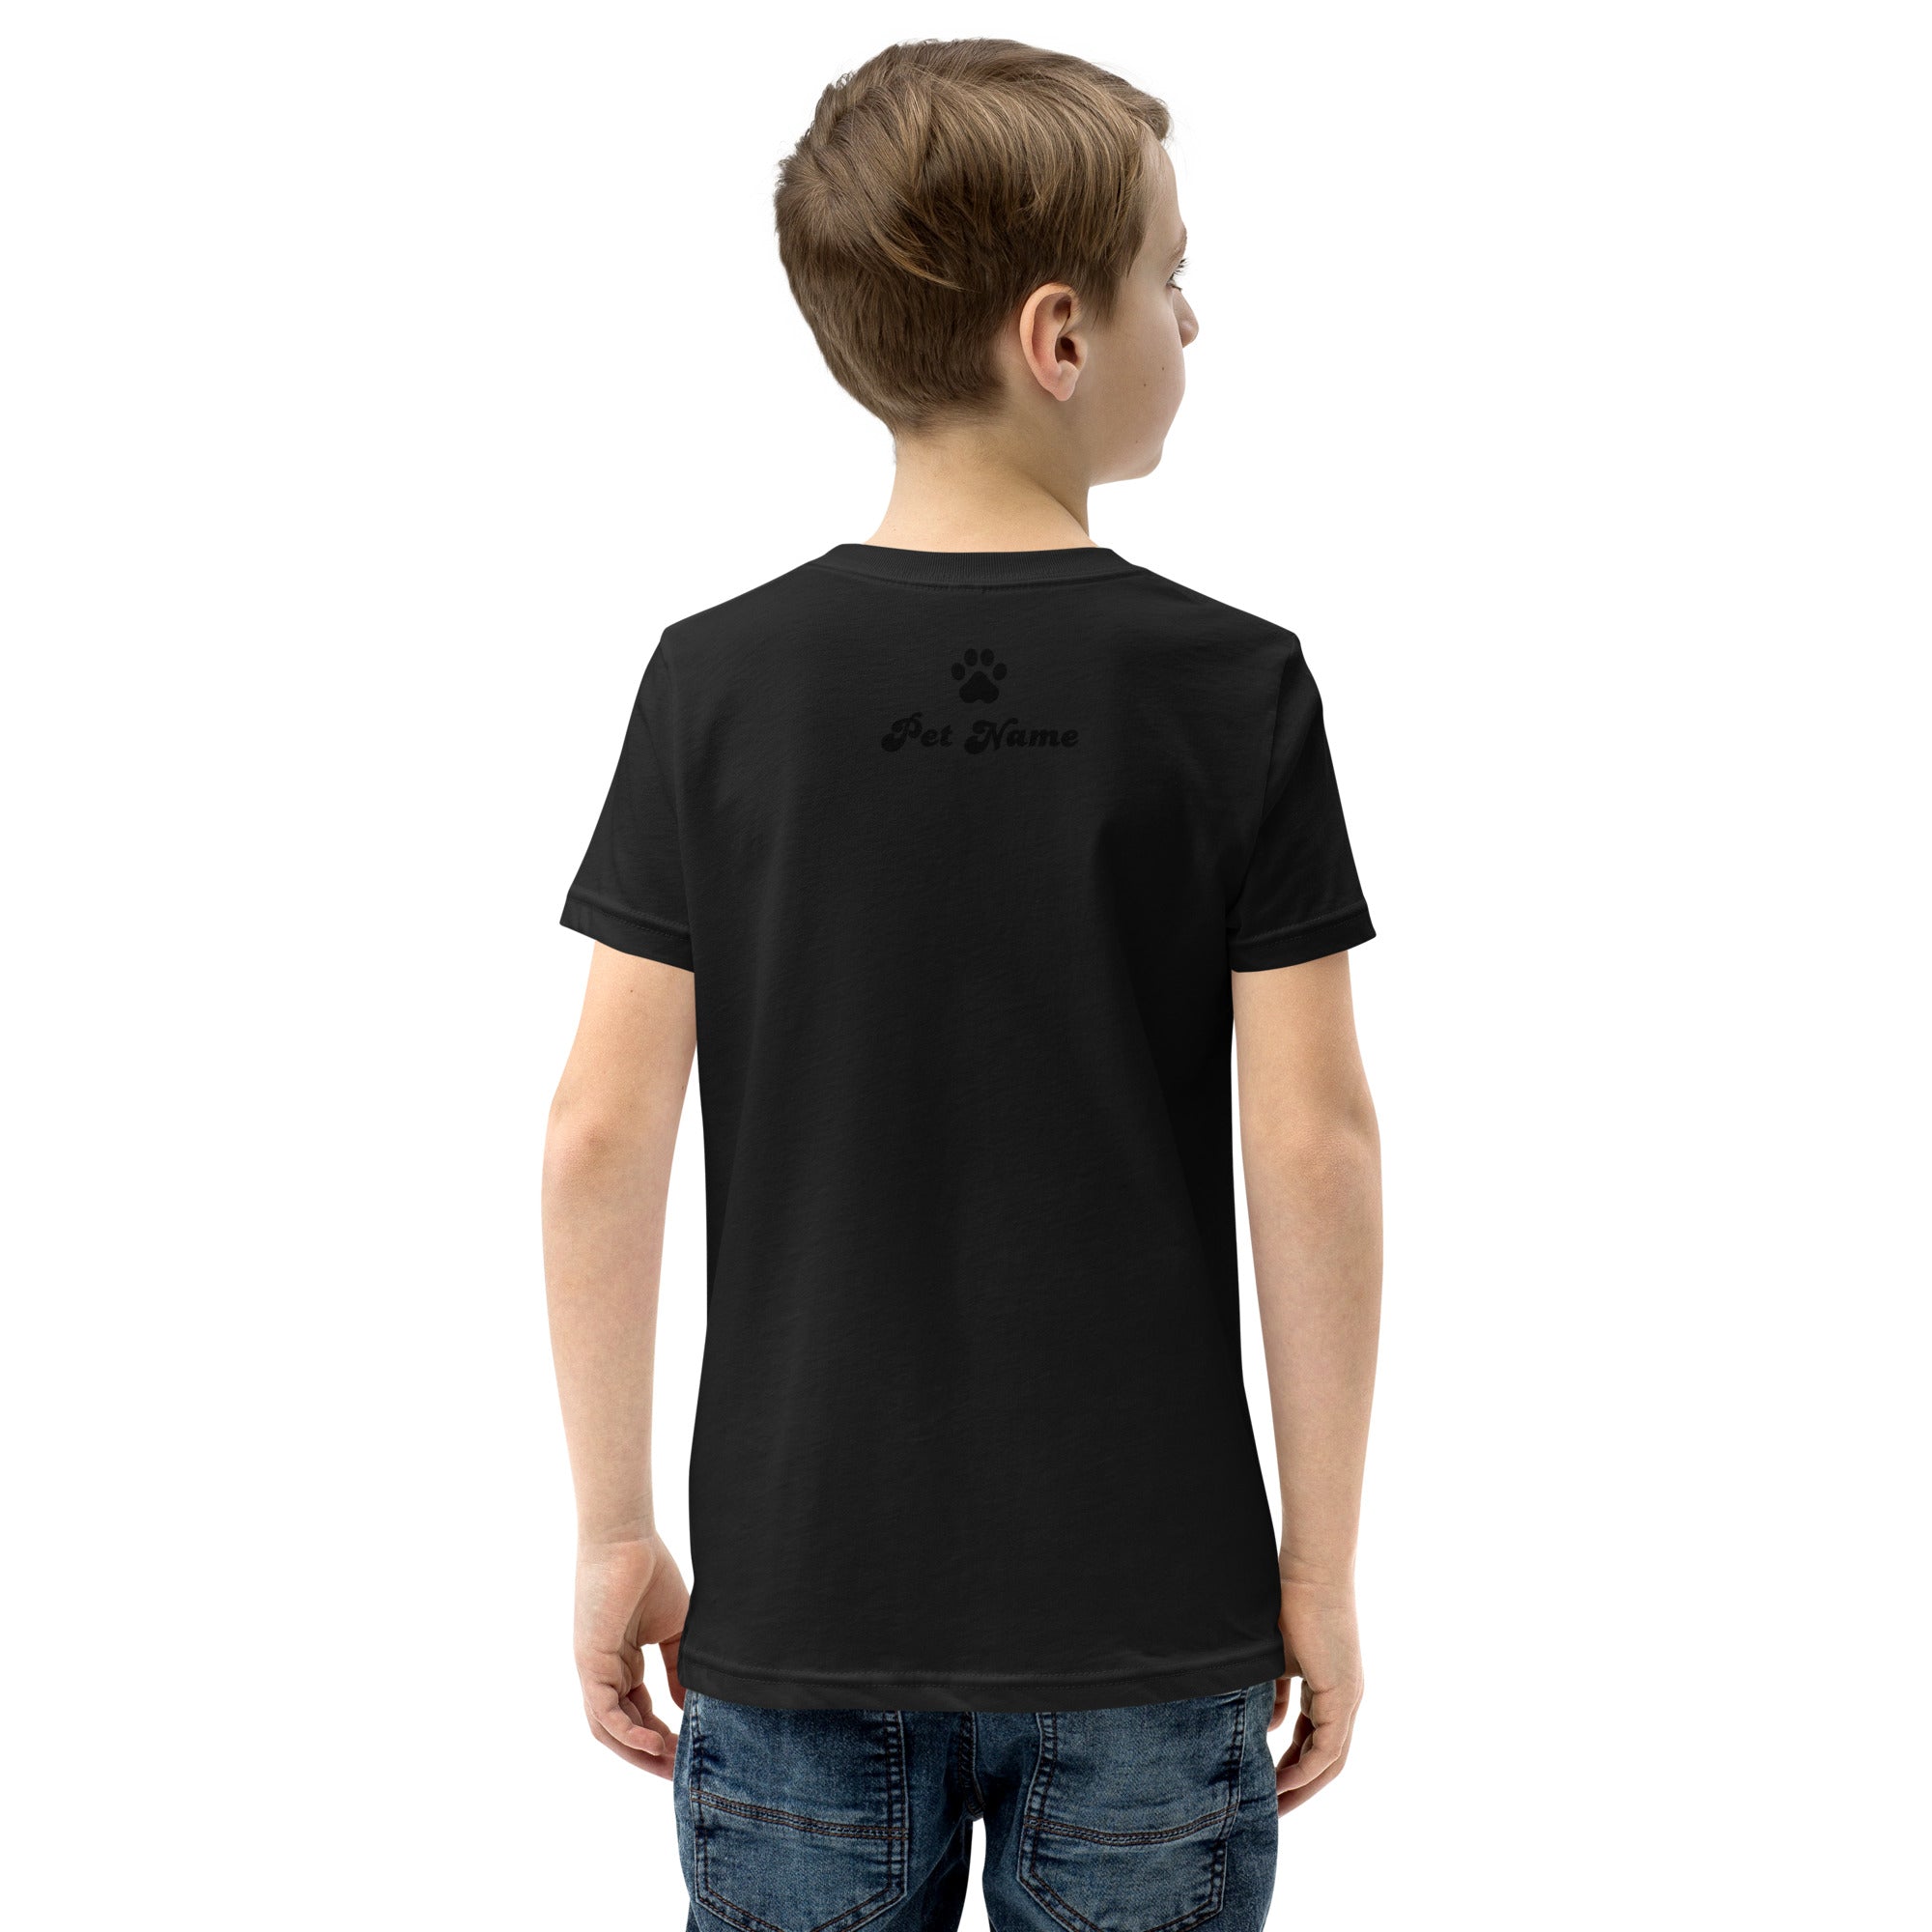 Samoyed Youth Short Sleeve T-Shirt